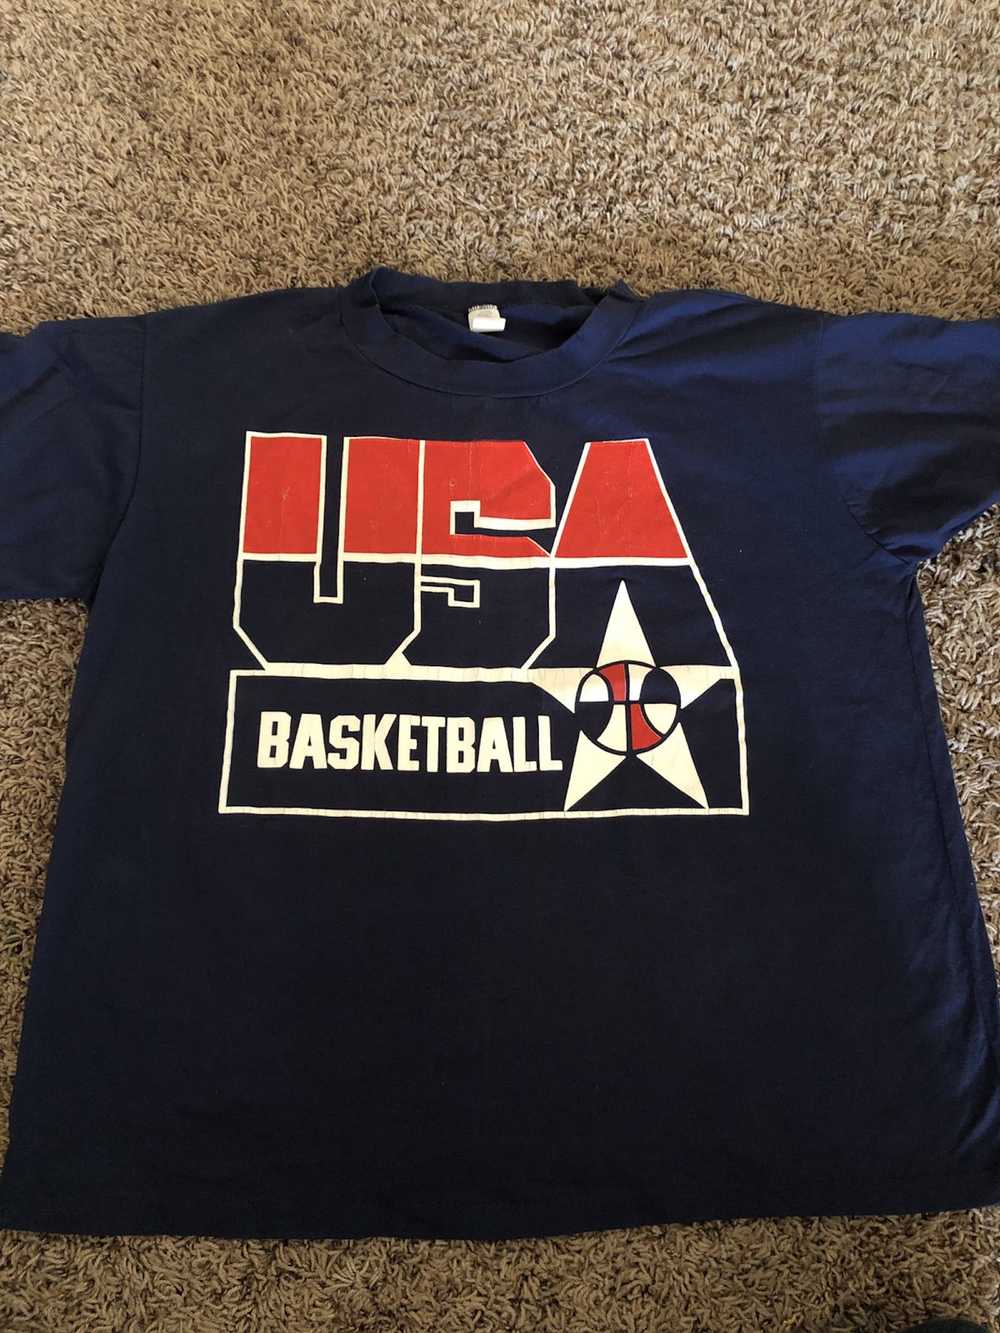 Usa Olympics USA Basketball T-shirt - image 1